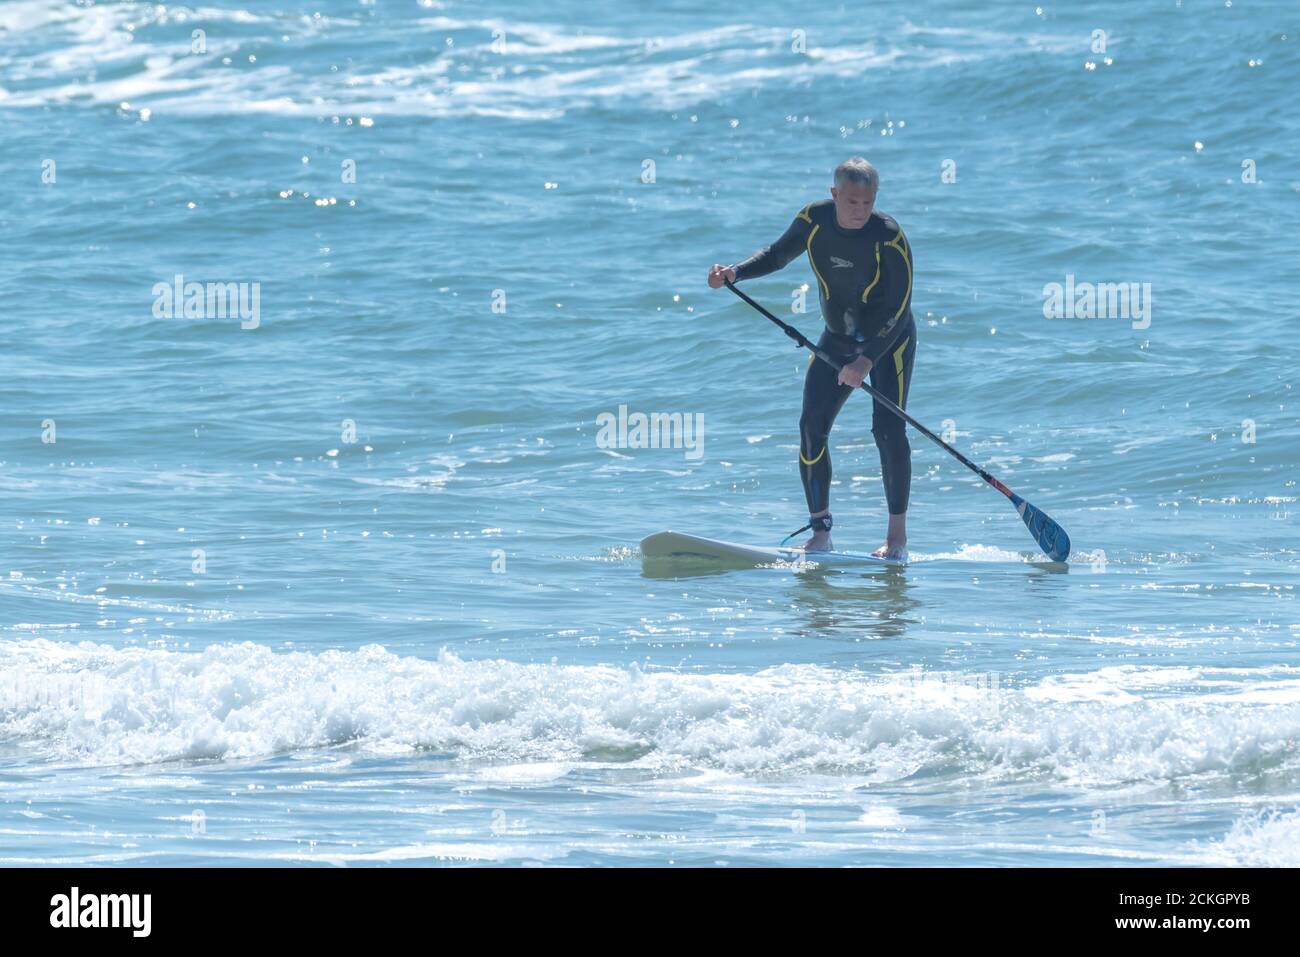 Sup surfeur dans la mer Méditerranée Banque D'Images